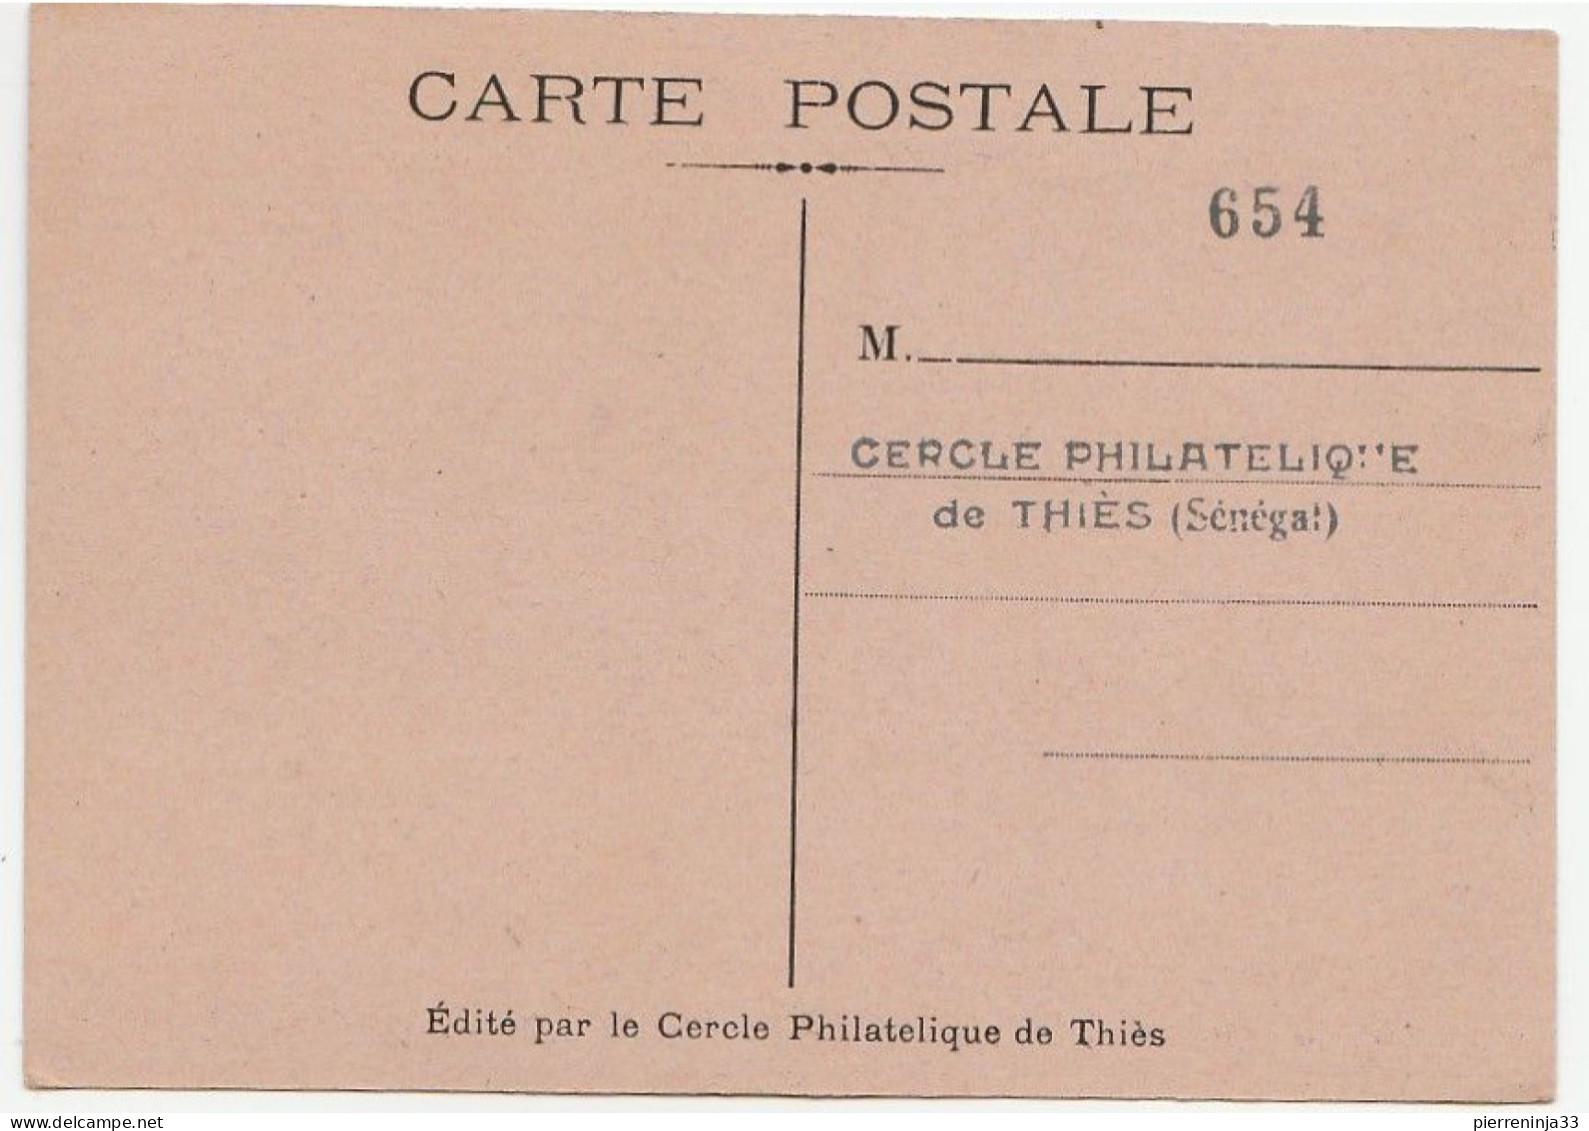 Carte Journée Du Timbre, Thiés / Sénégal, 1949 - Covers & Documents